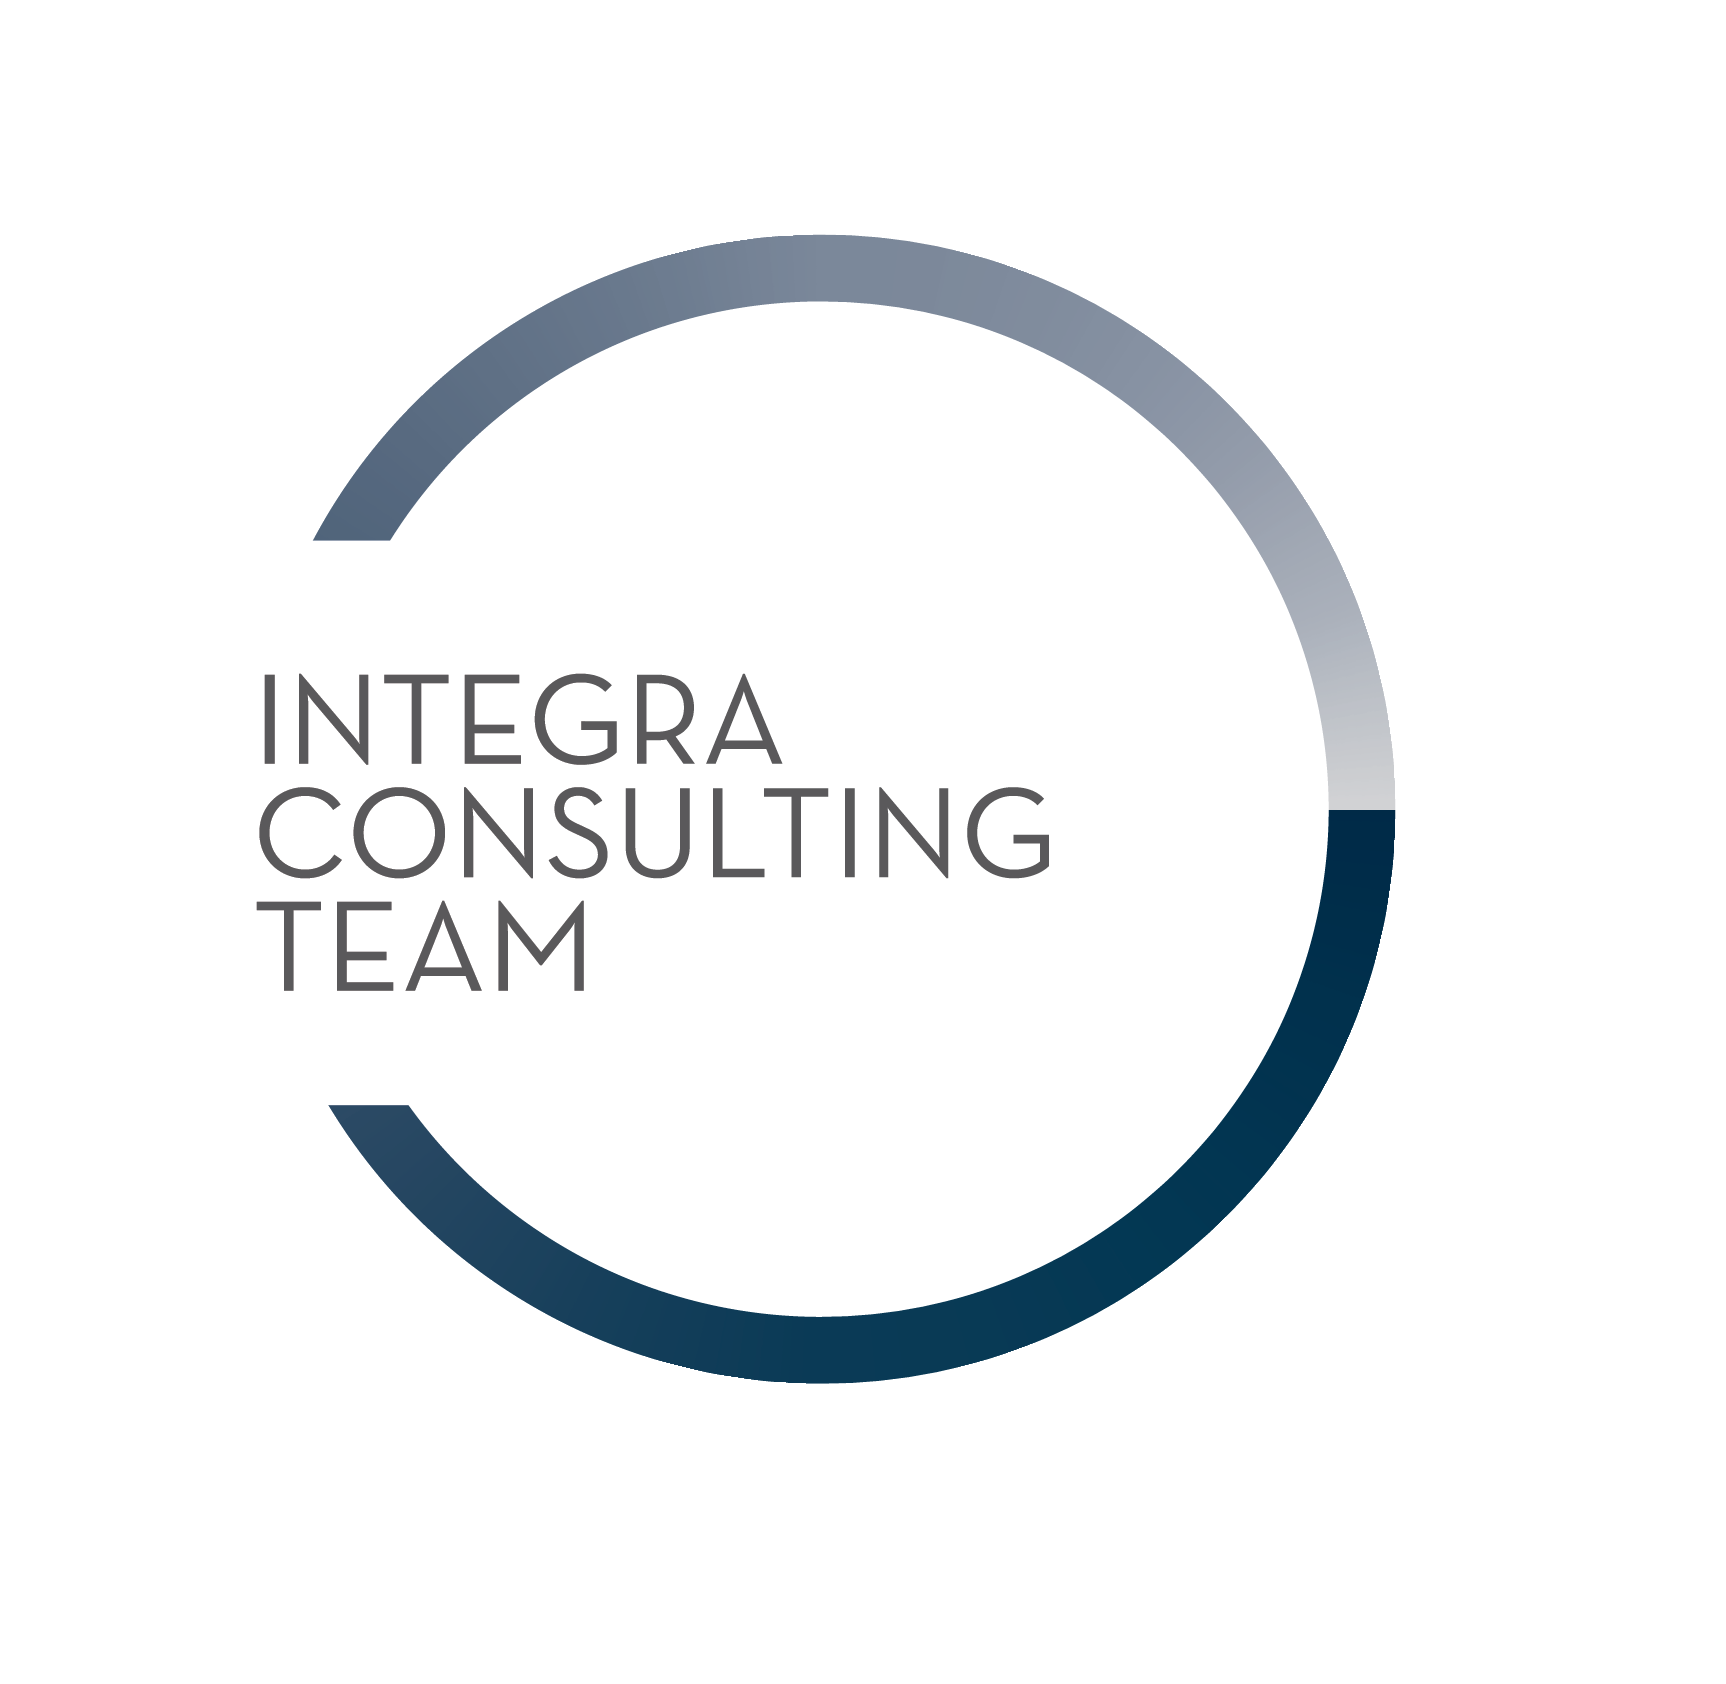 Integra Consulting Team